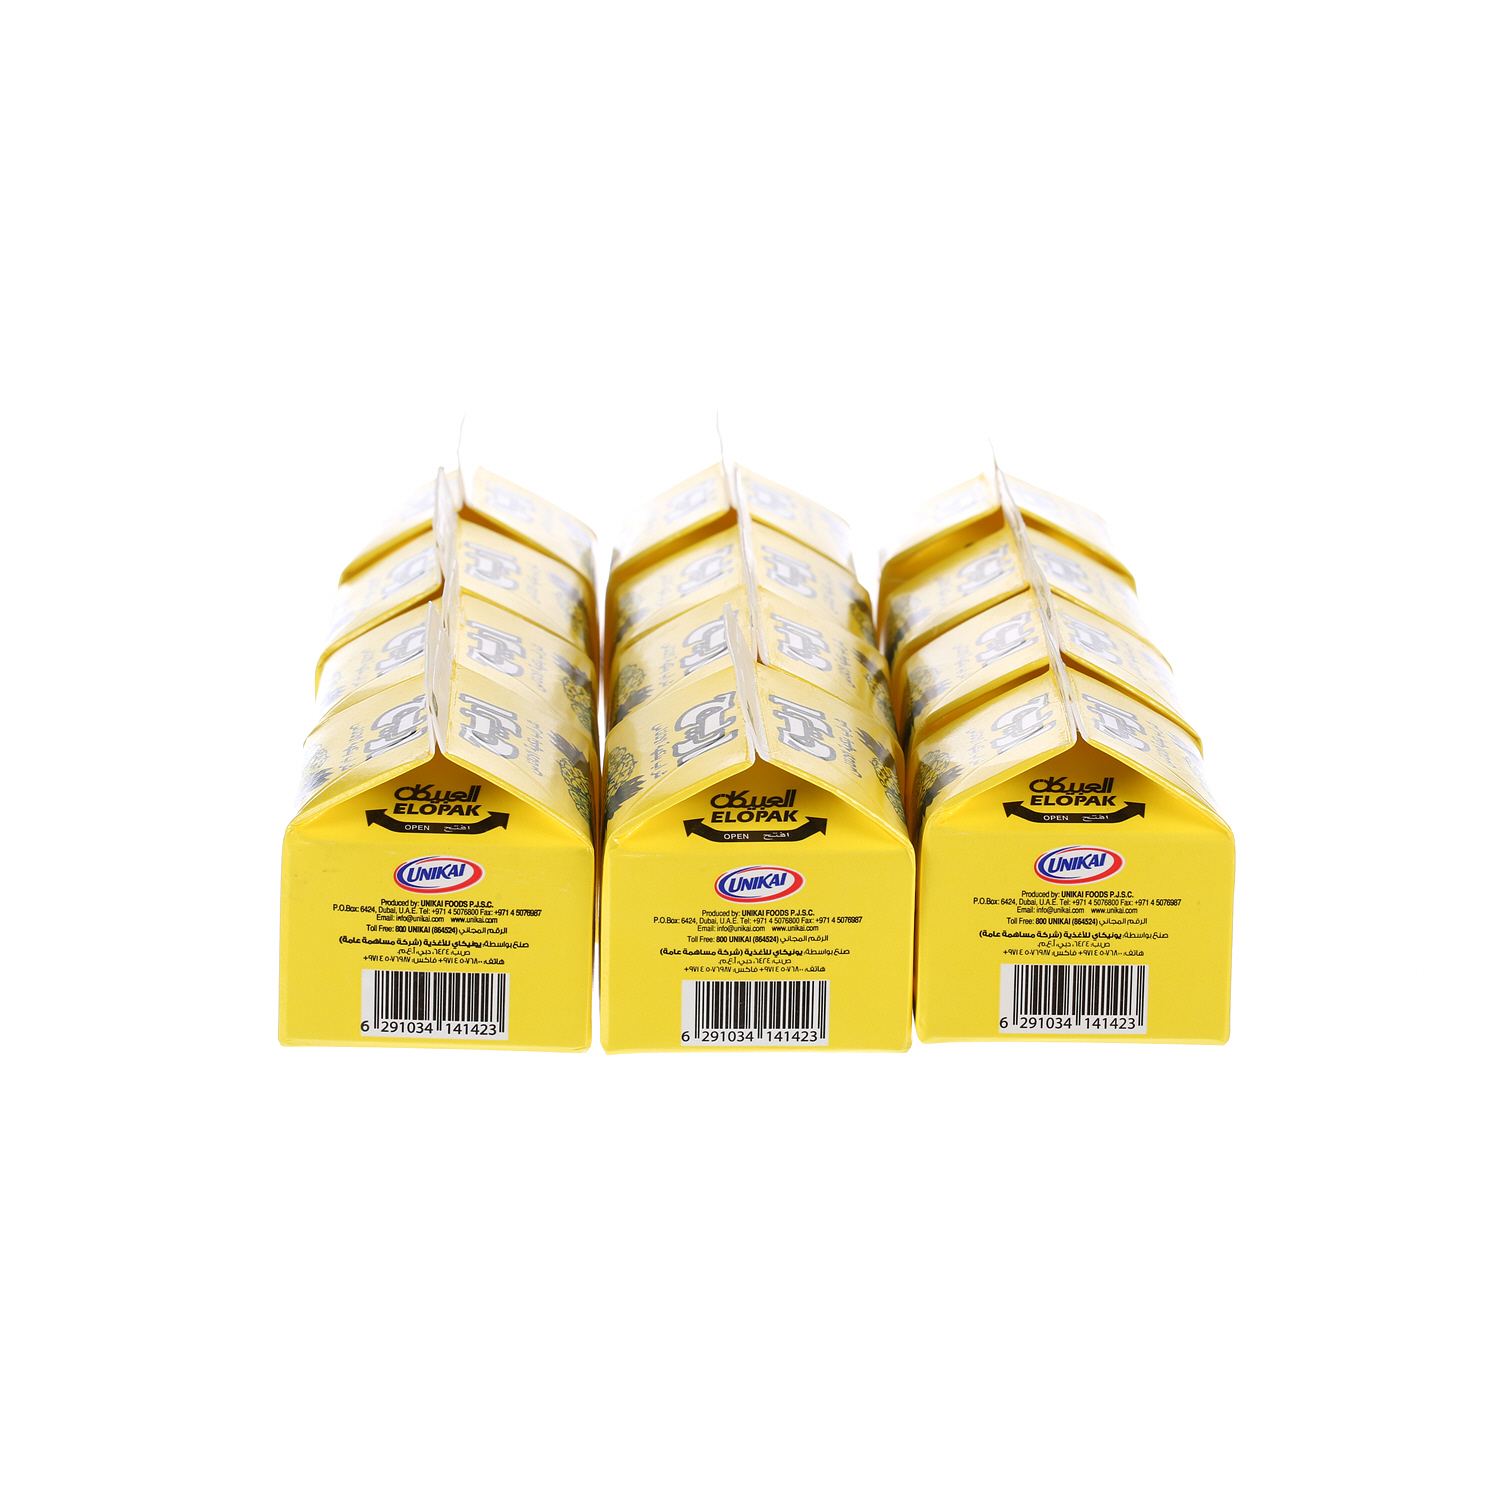 Areej Juice Pineapple 225 ml × 12 Pack